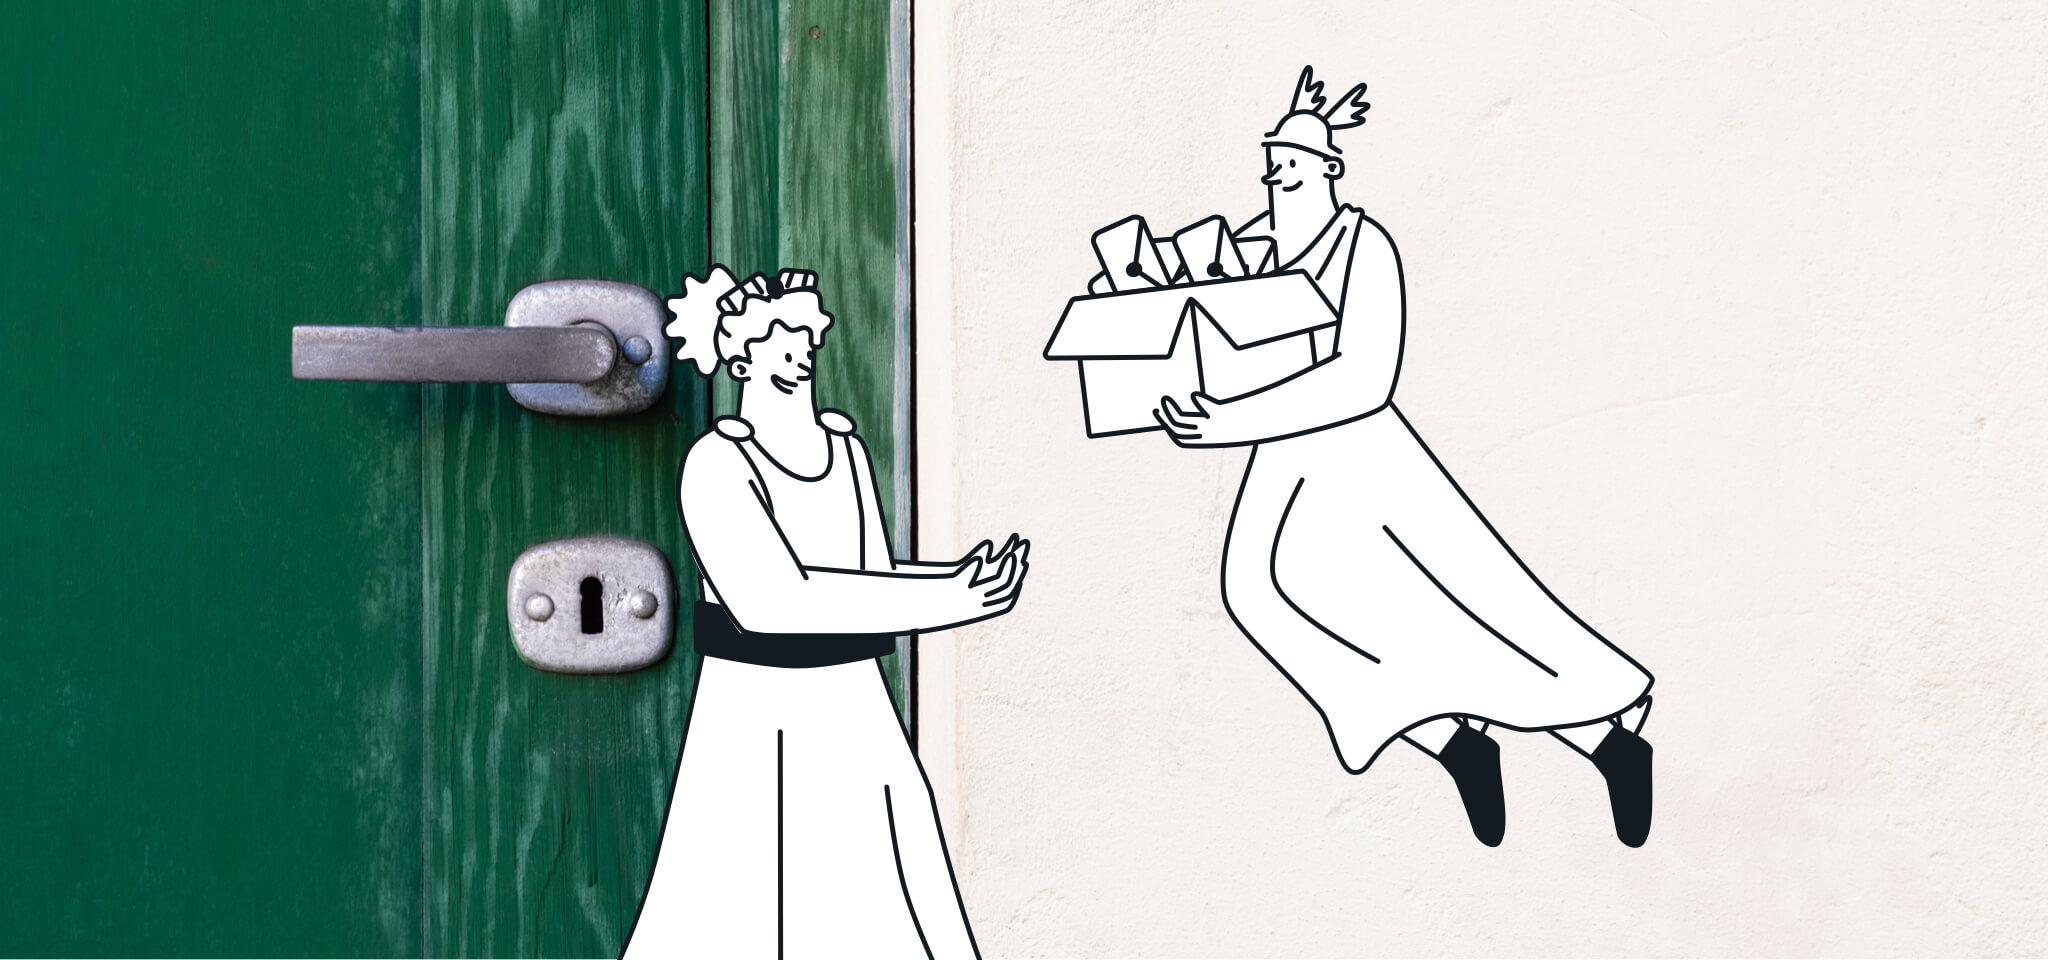 Hermes entrega correo a una diosa junto a una puerta verde